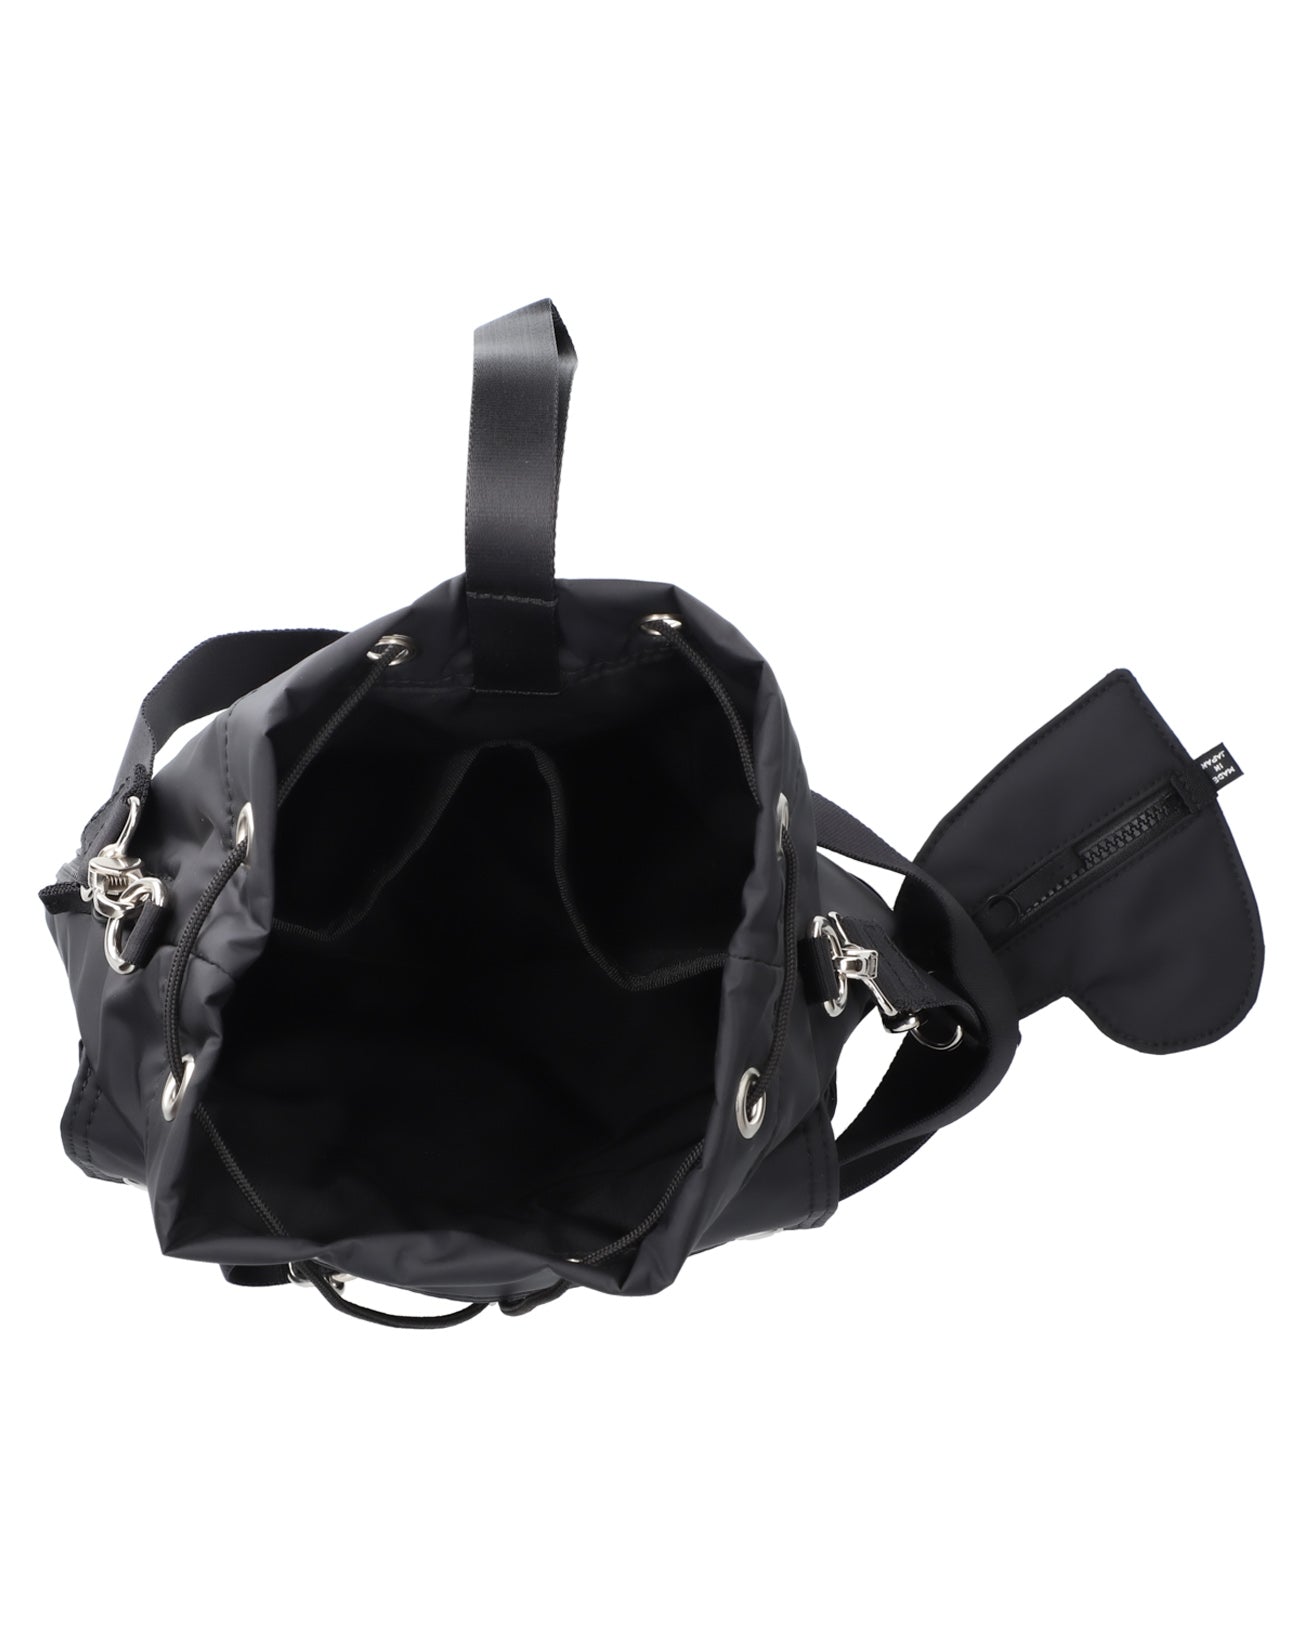 x RAMIDUS Helmet Purse Bag- black